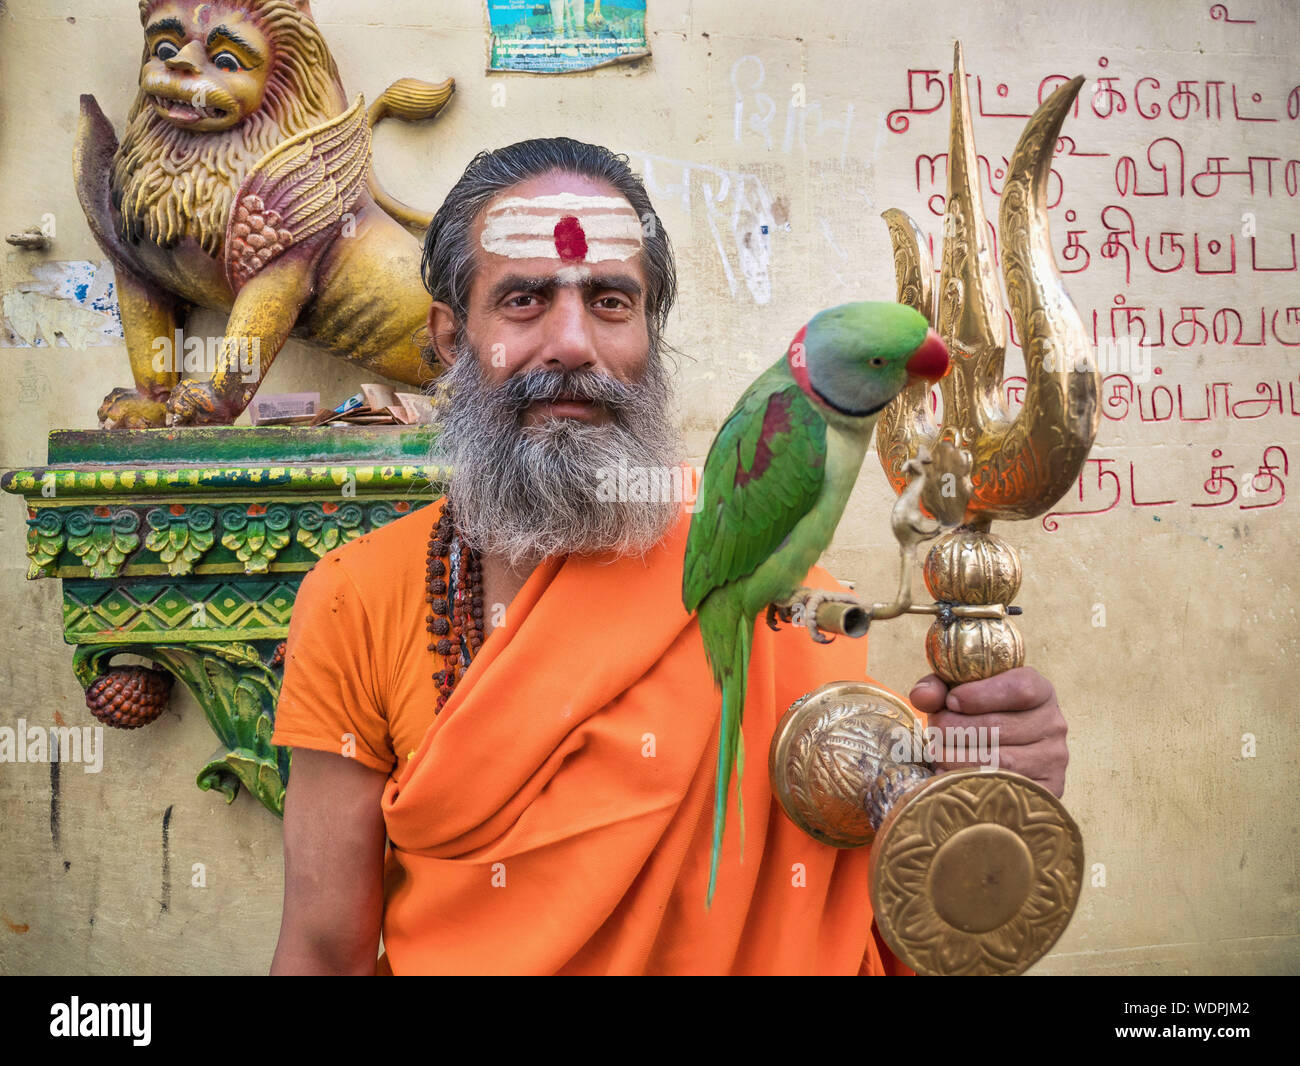 Indisch-hinduistischen Sadhus heiligen Mann mit einem goldenen Dreizack und Green Parrot in Varanasi, Uttar Pradesh, Indien, Asien Stockfoto